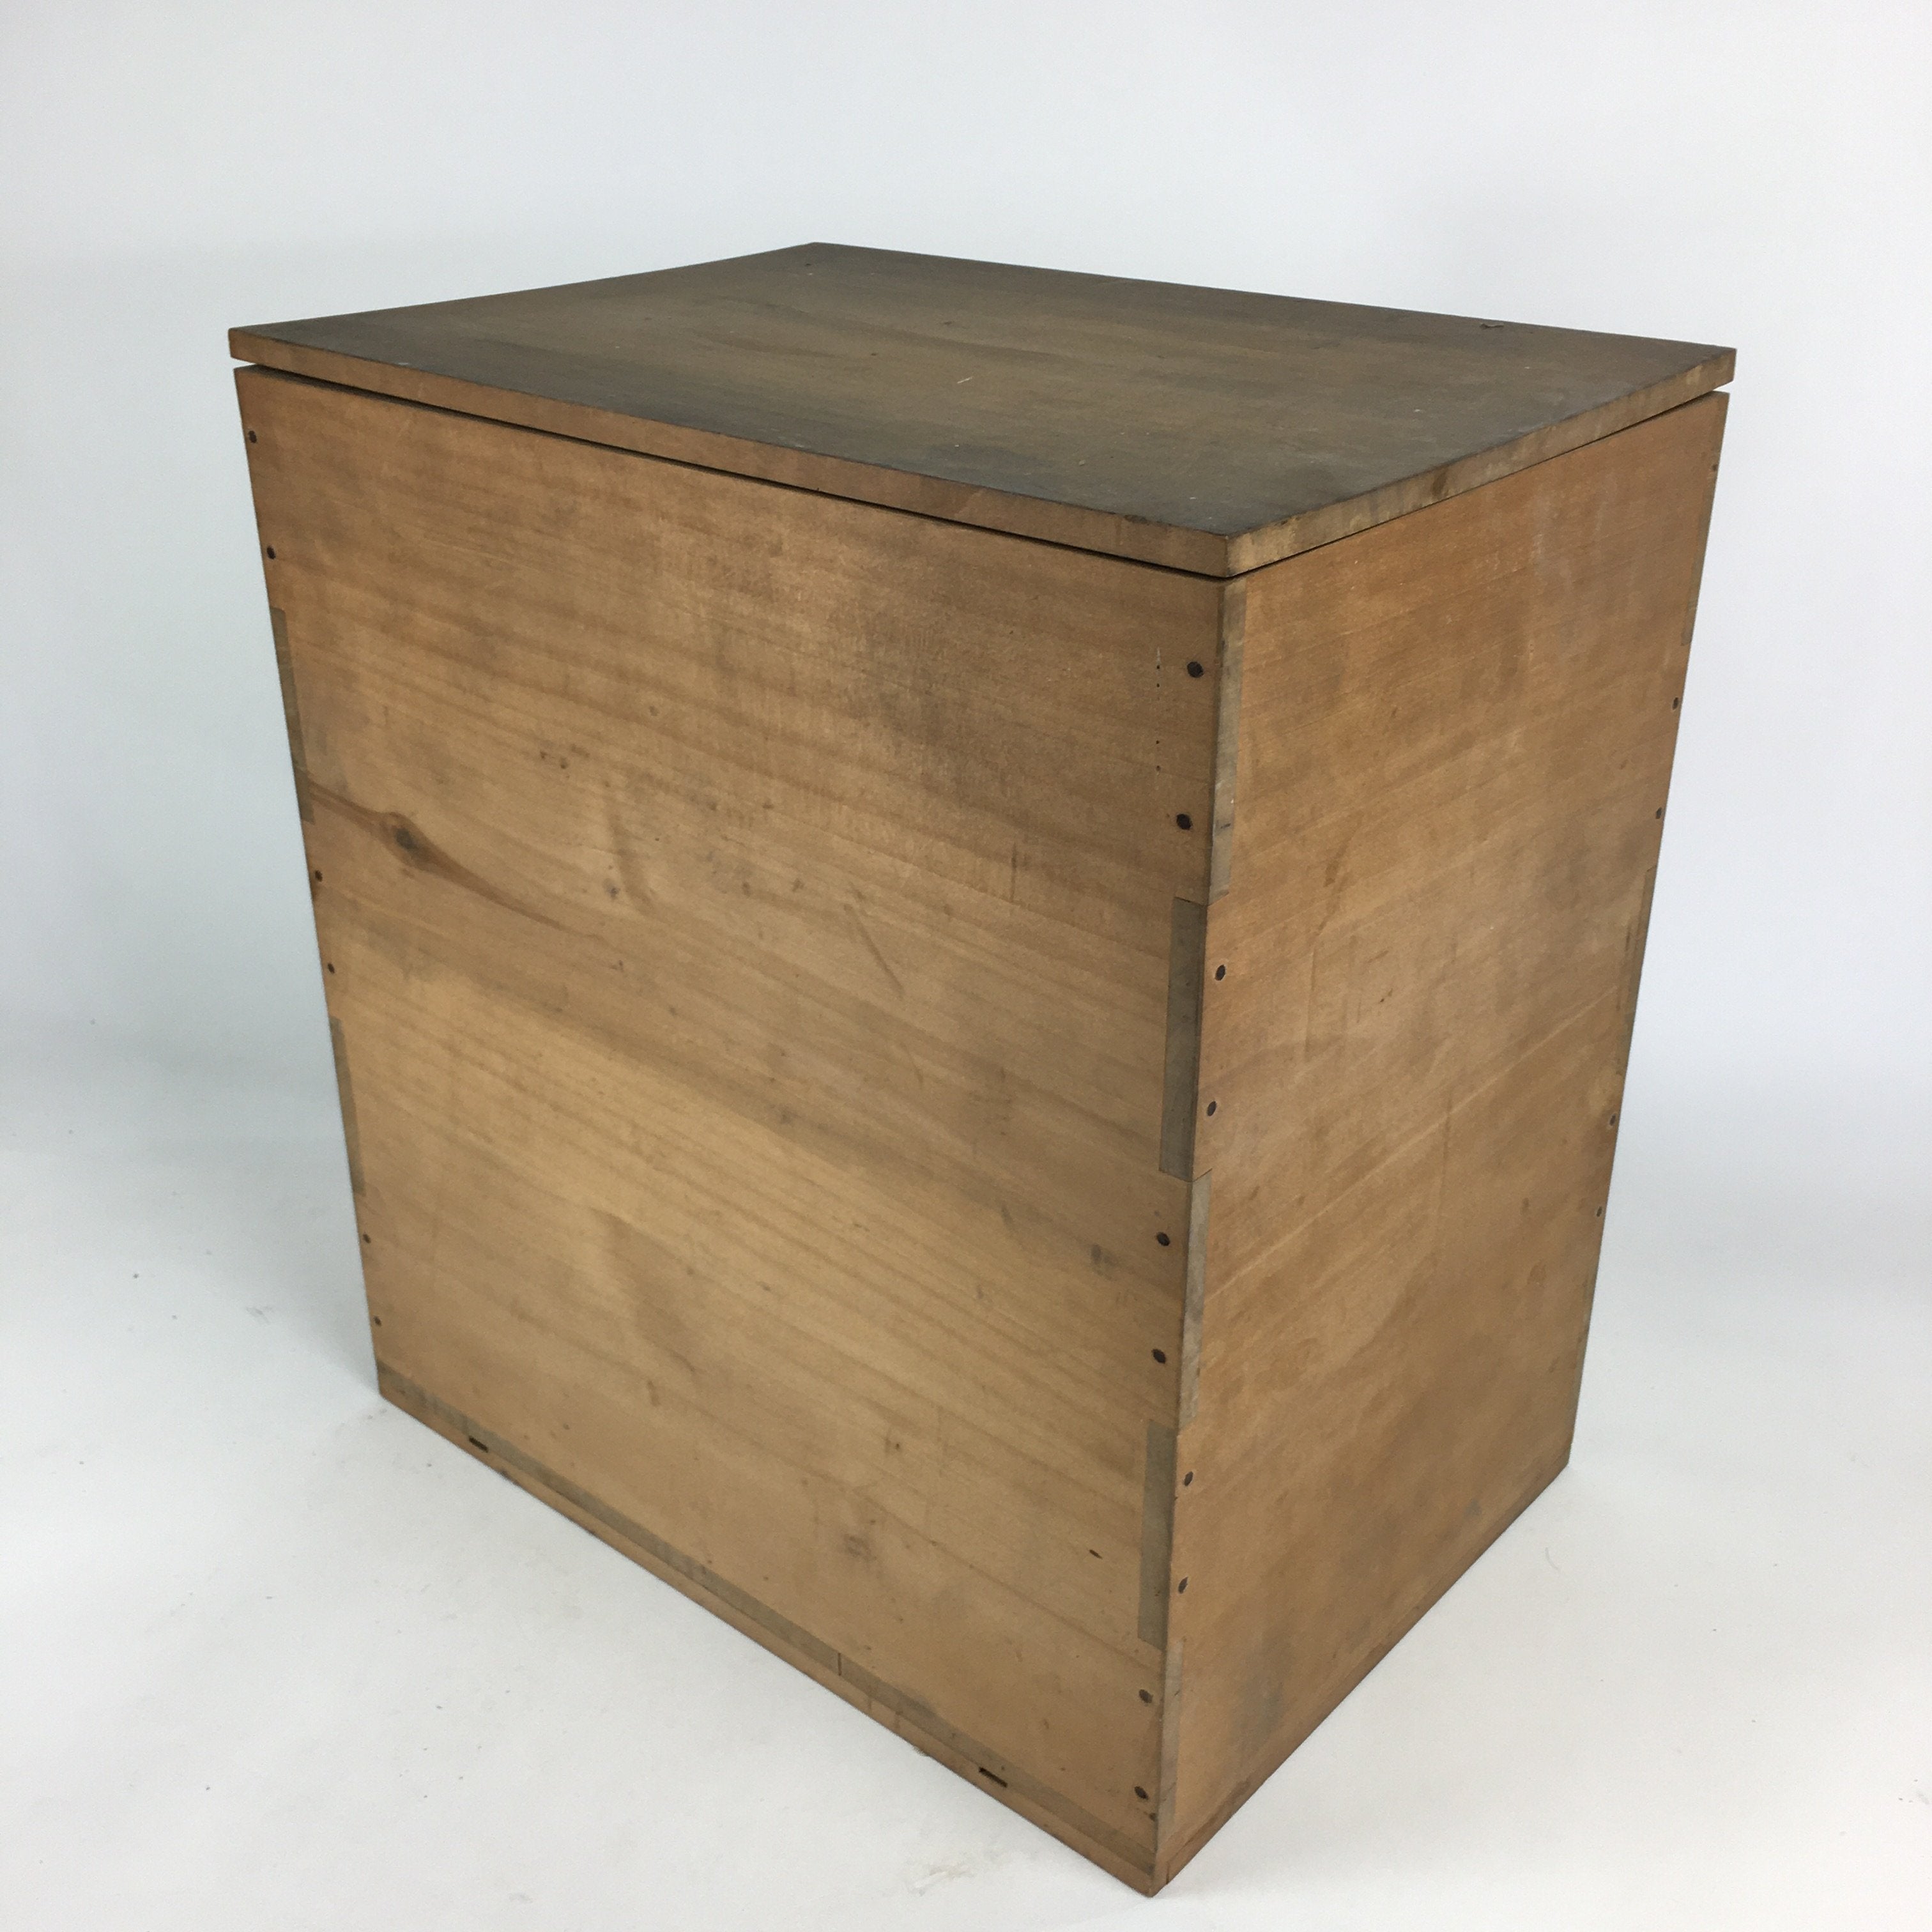 Japanese Wooden Storage Box Vtg Pottery Hako Inside 38.4x26.9x40.9cm WB865